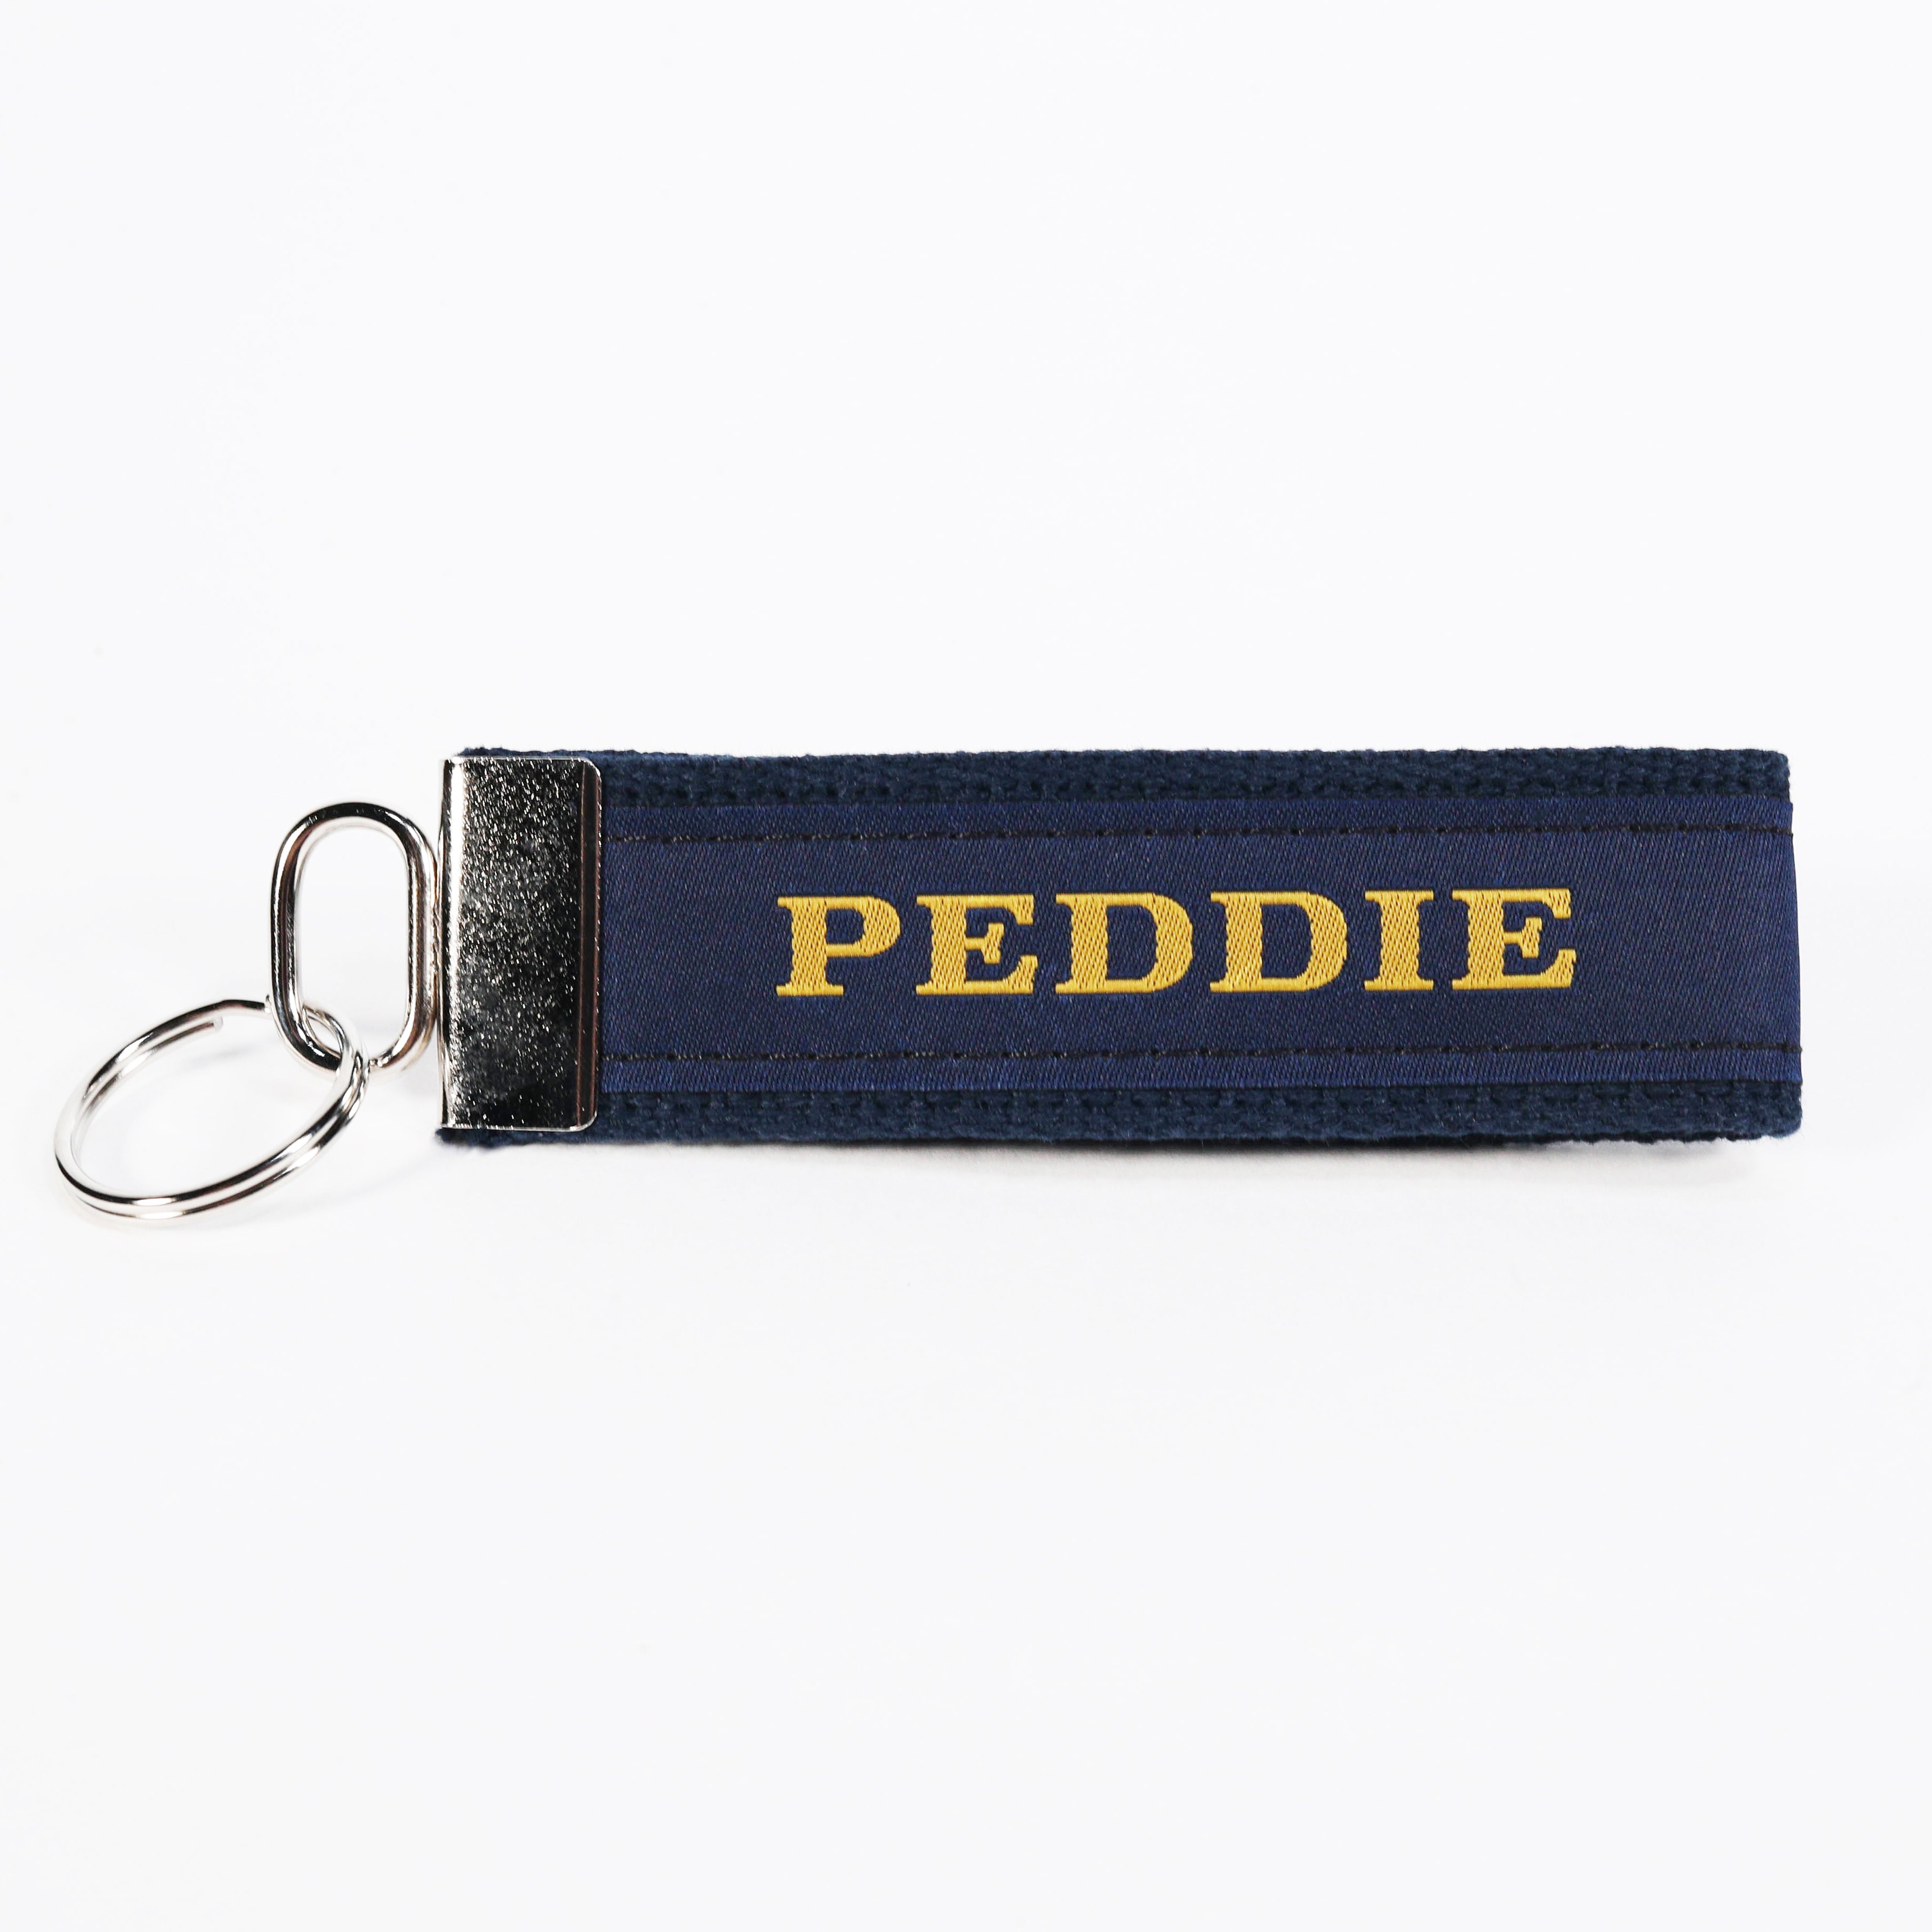 Peddie Keychain